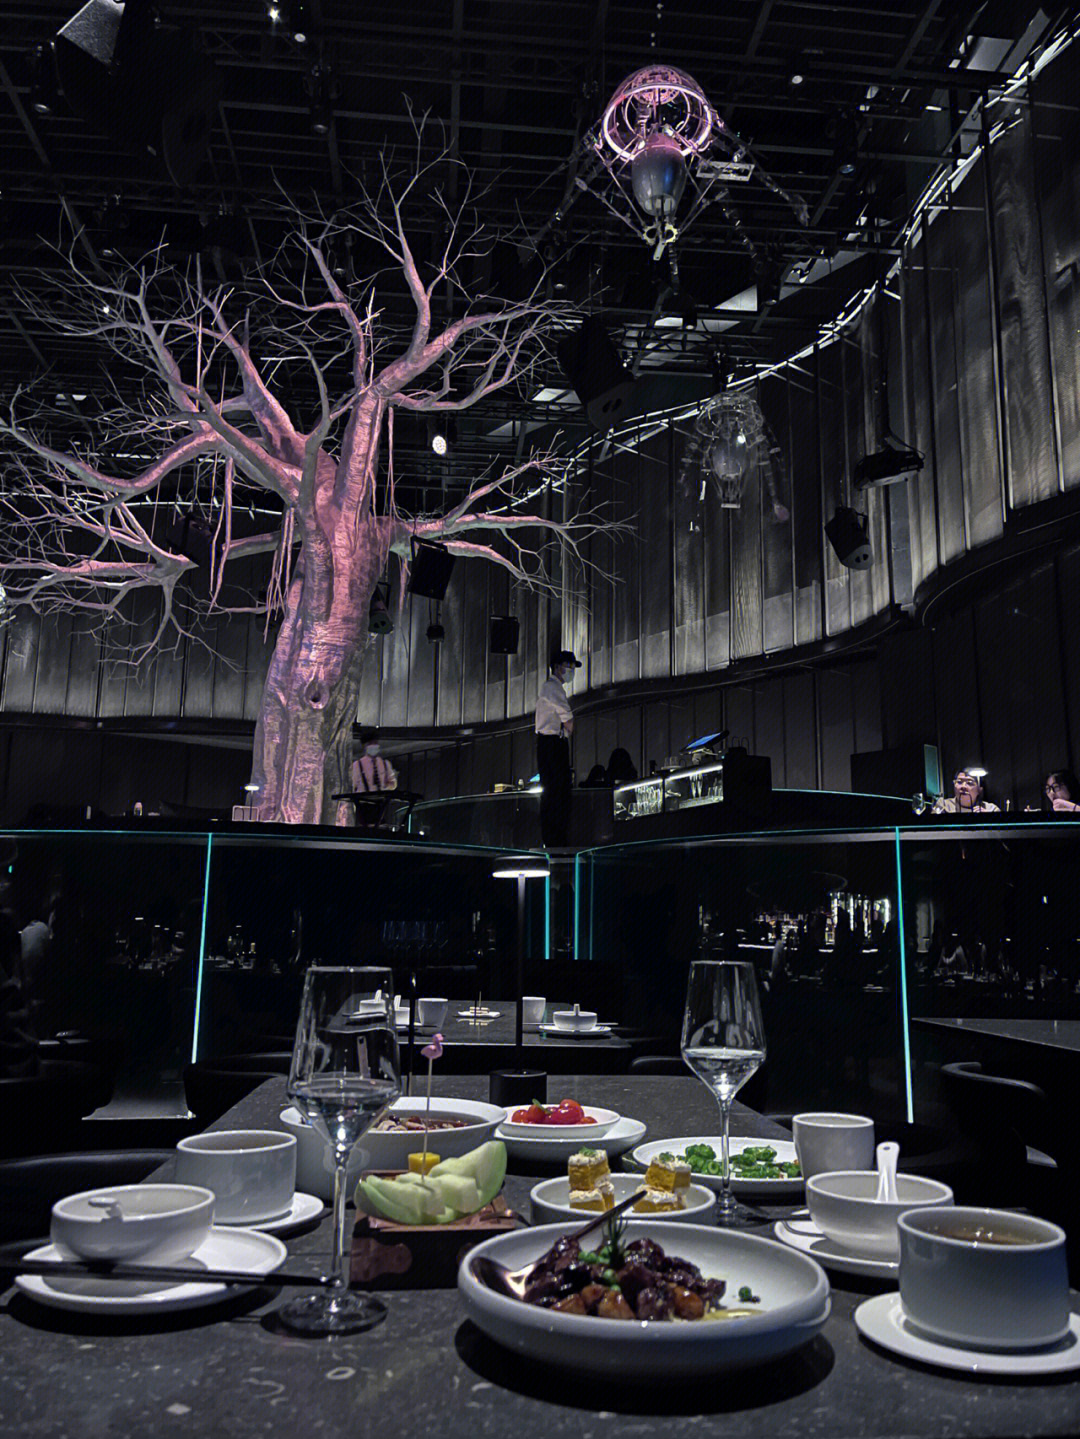 2020年宁波黑珍珠餐厅图片